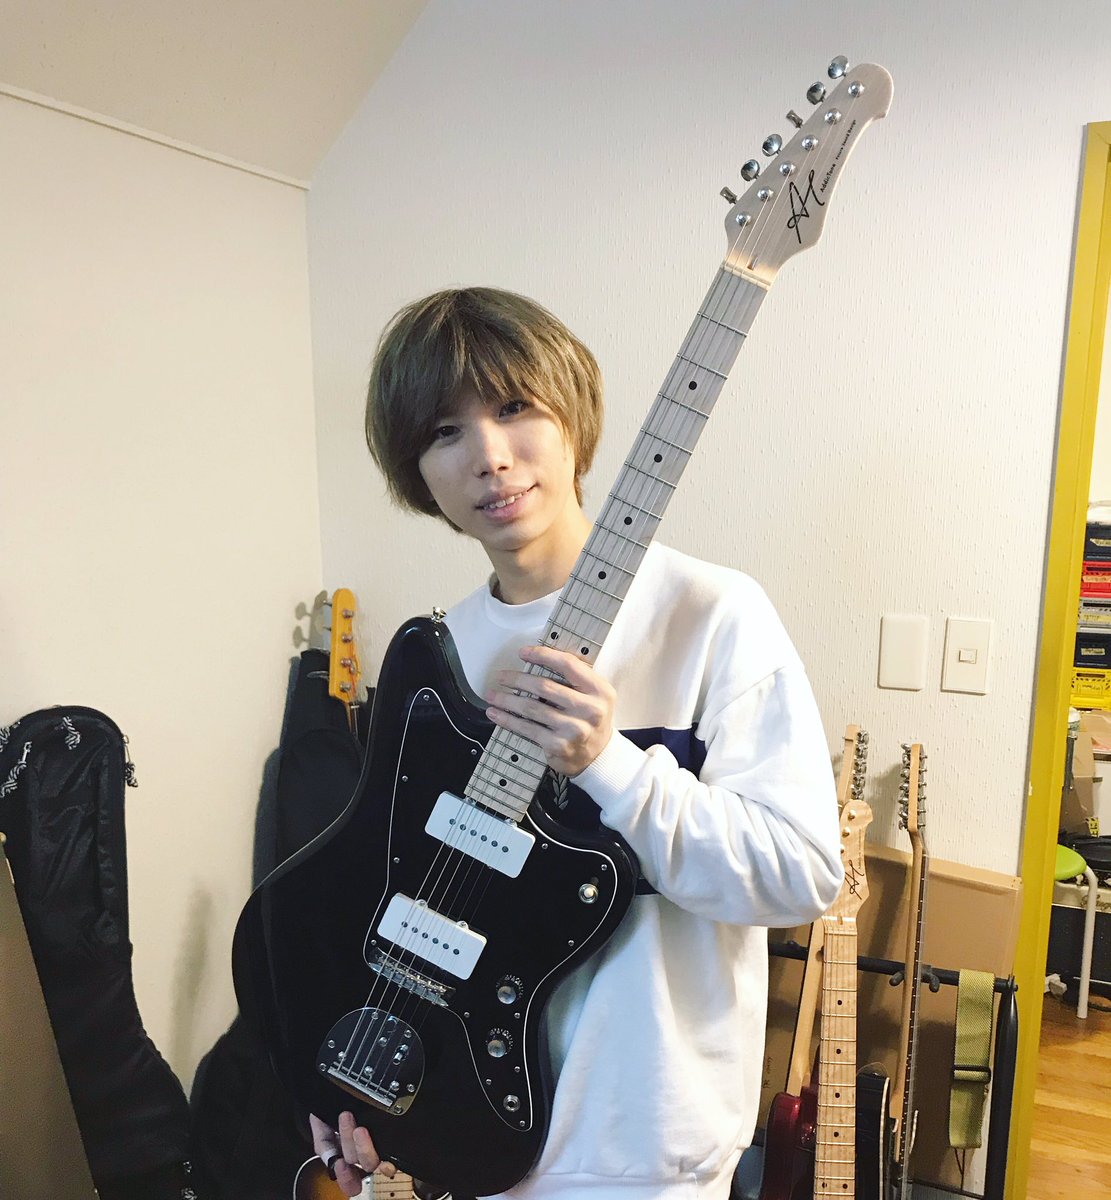 大輔 Official髭男dism Ladyのライブアレンジで大活躍してくれました このギターかっこいいよね Twitter